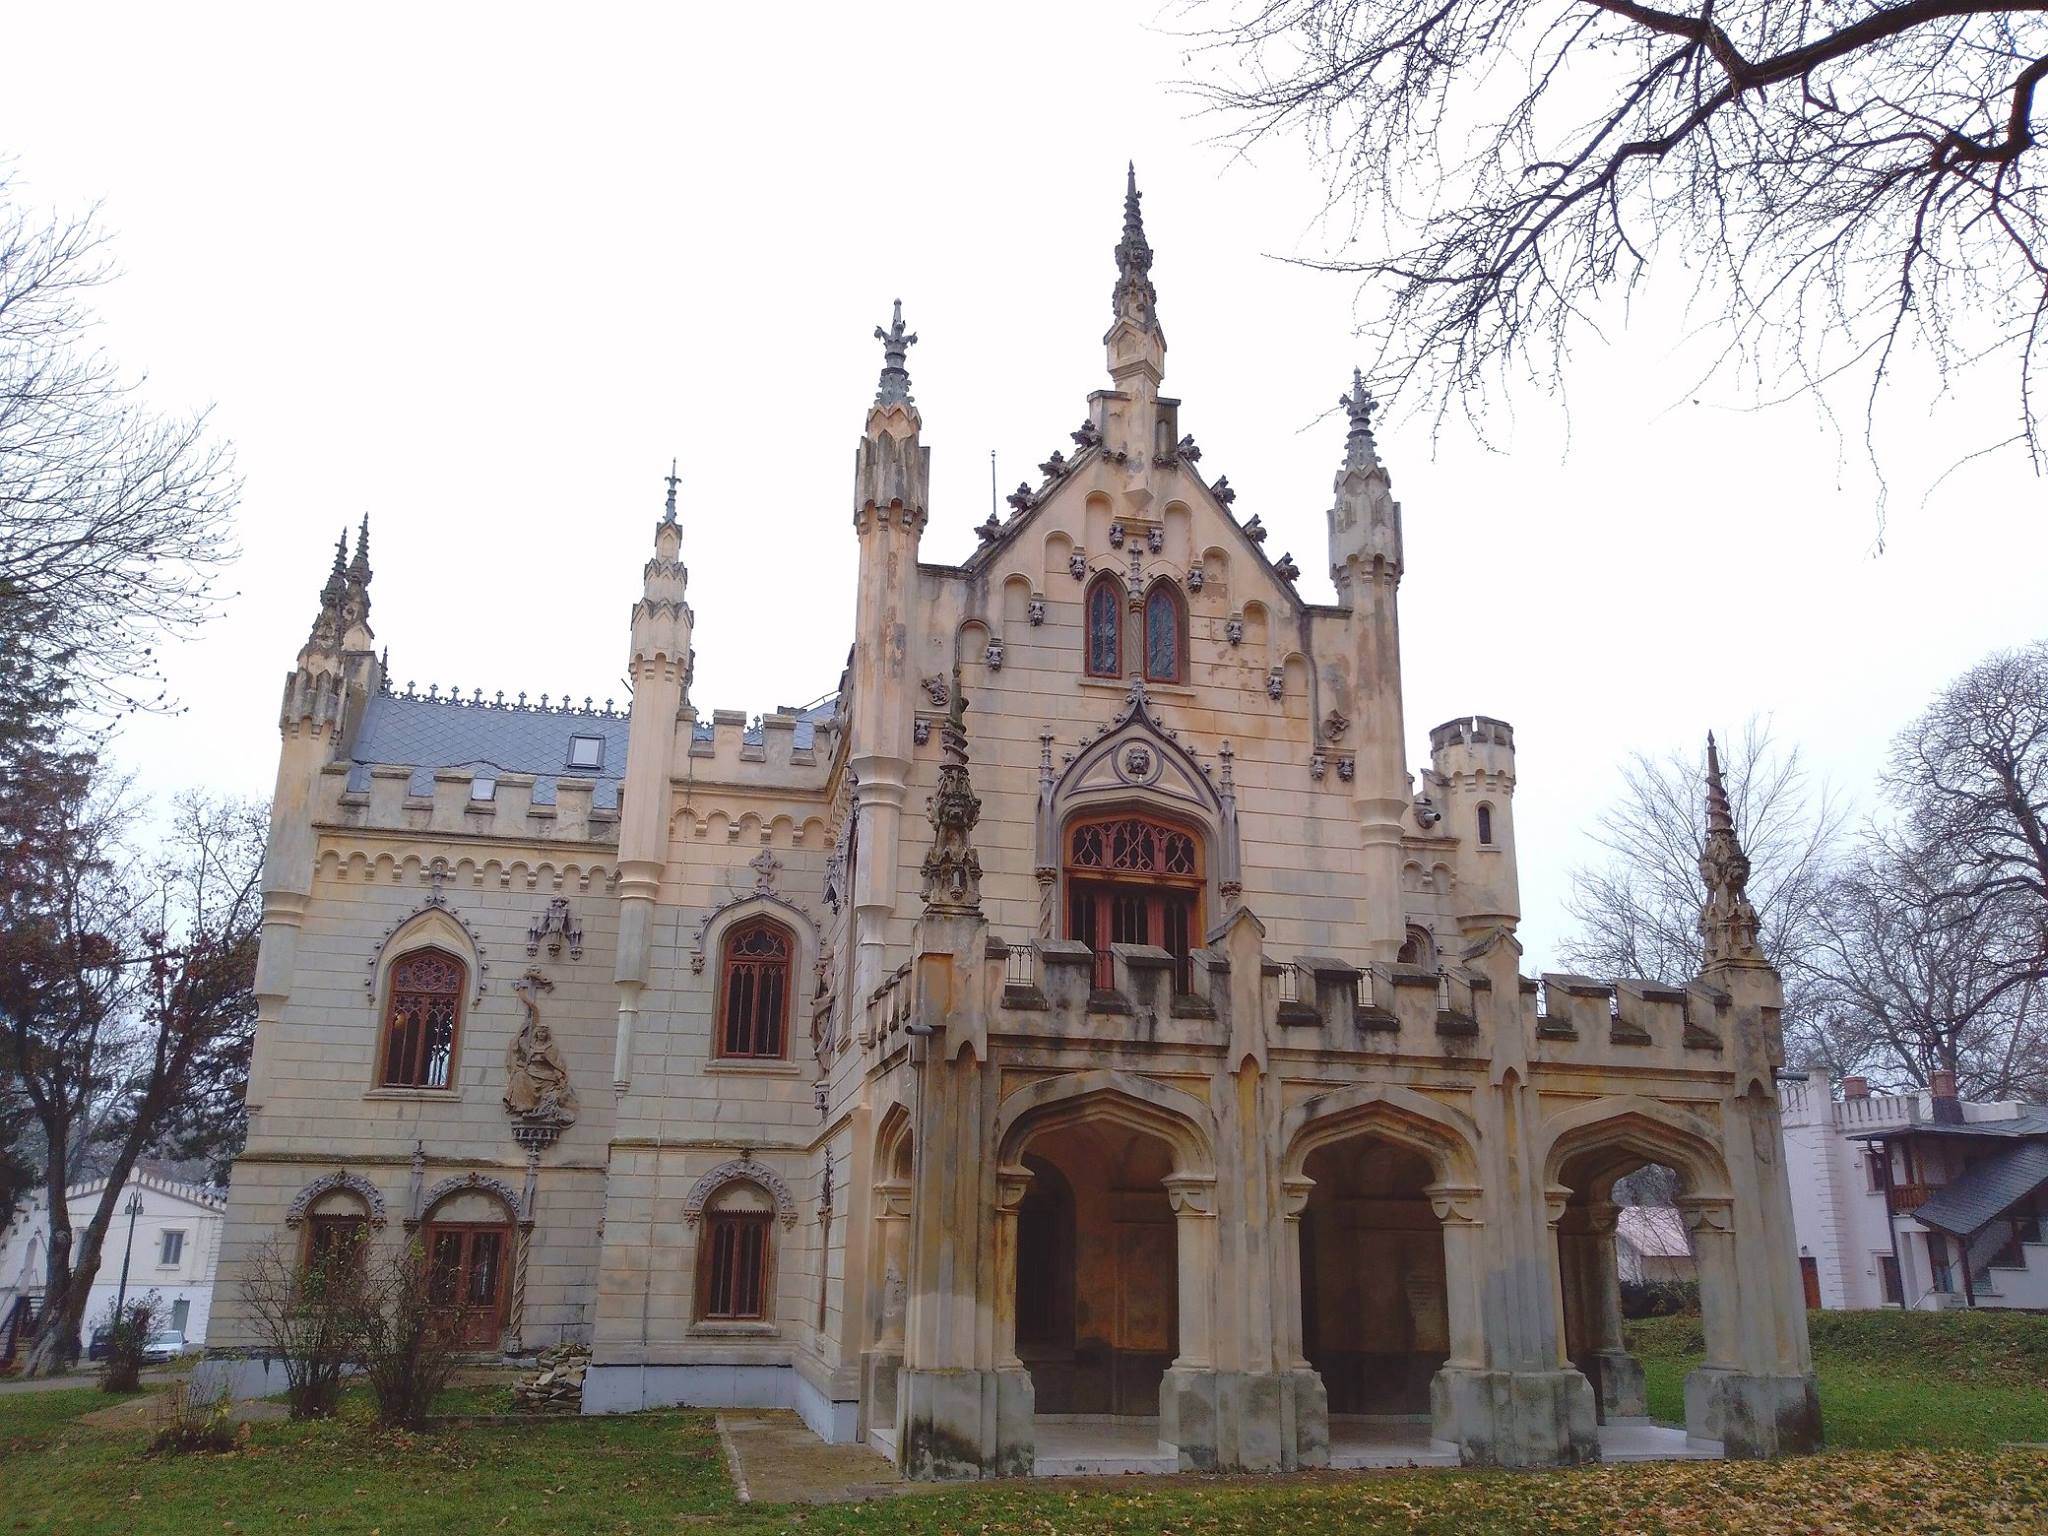 Vacanță la castel și palat în România, în cele mai frumoase locuri princiare